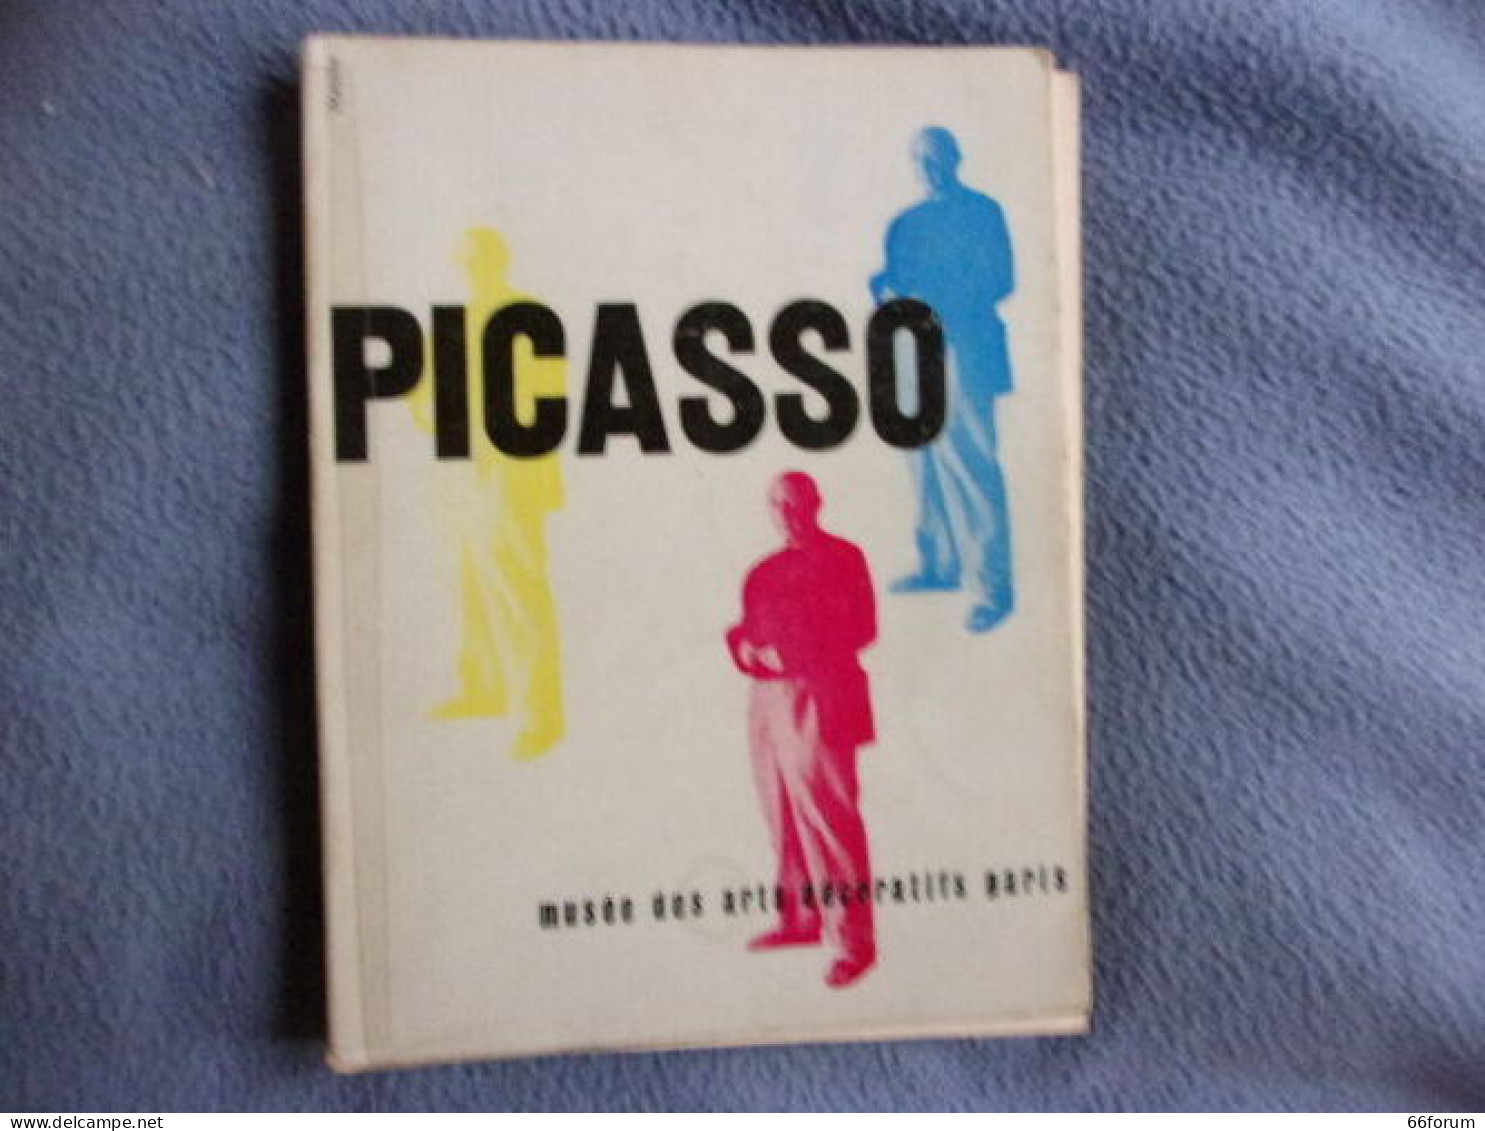 Picasso Peintures 1900-1955 Au Musée Des Arts Décoratifs - Art